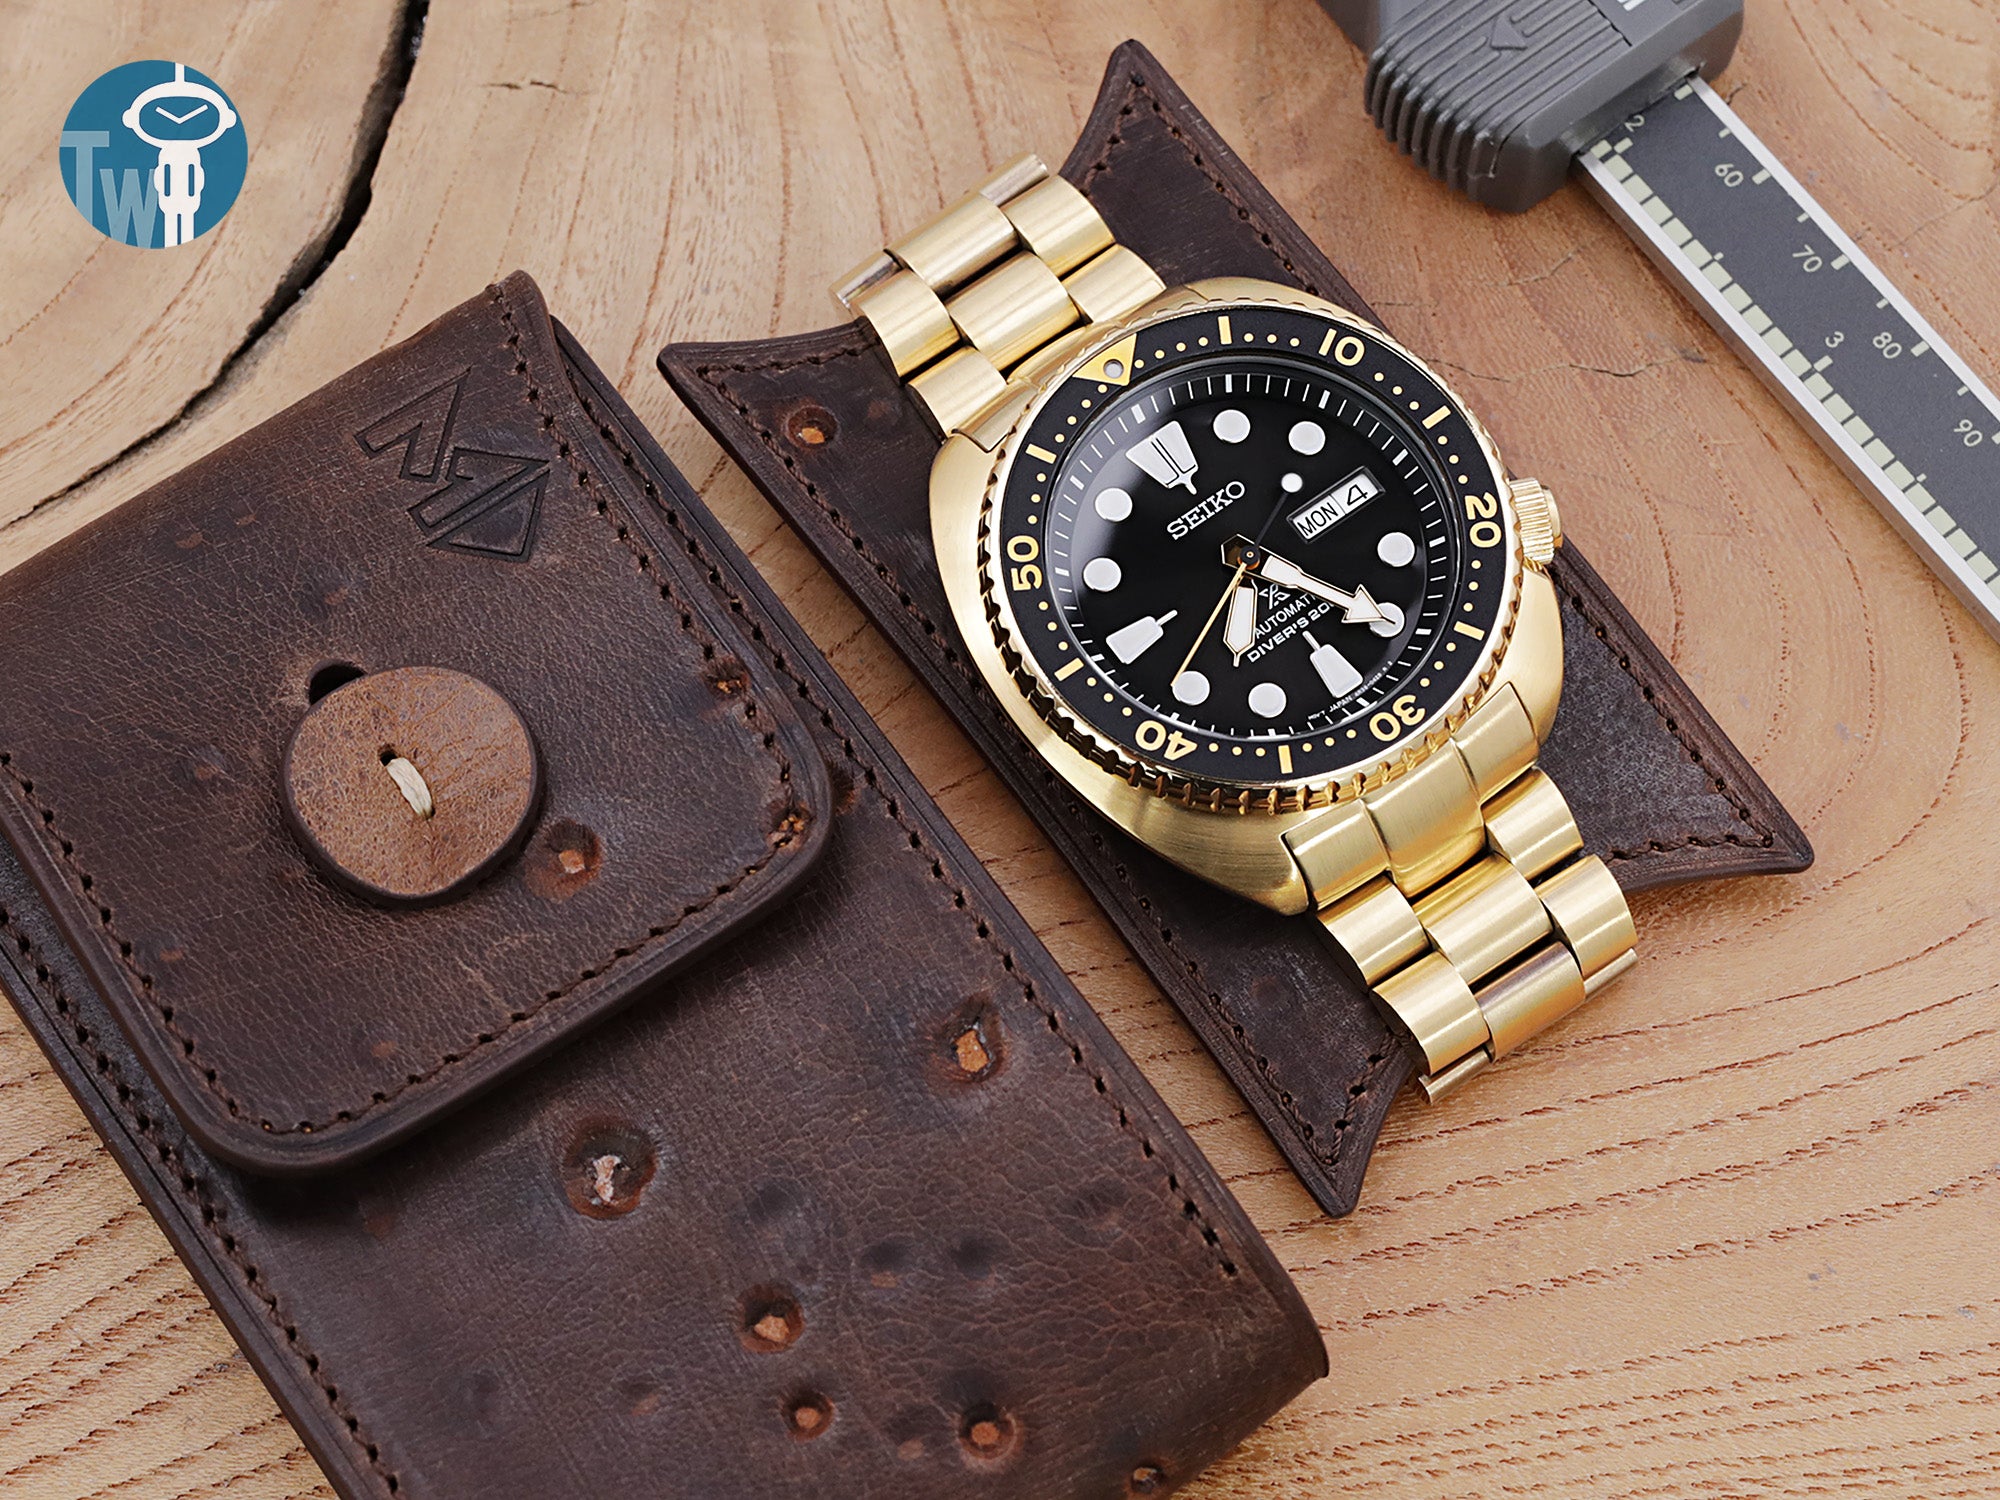 MT-3 意大利乳酪隨機多孔皮革 腕錶收納袋 旅行單只錶包 可擕式手錶保護袋, 小號